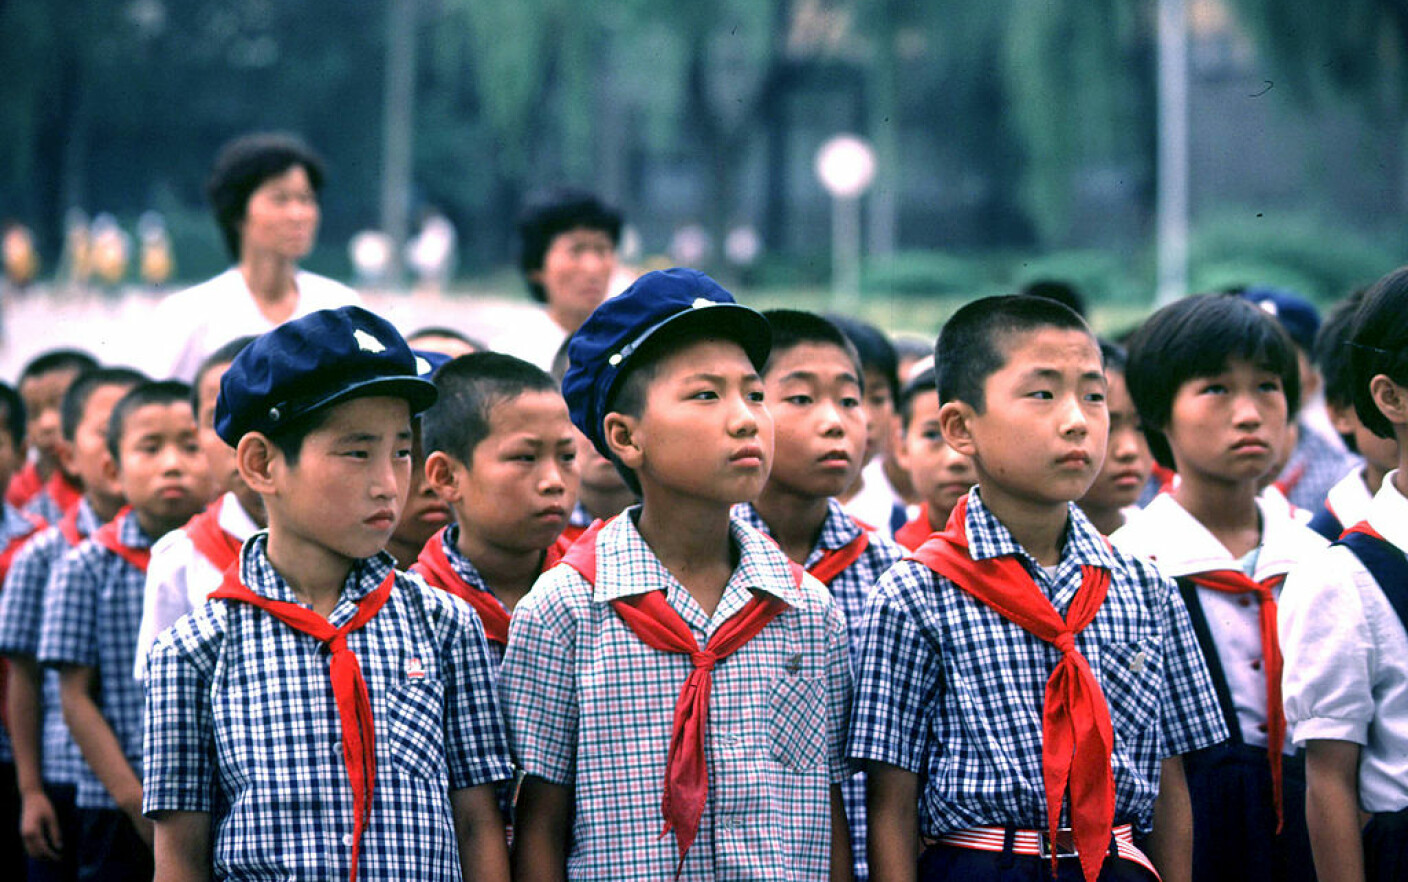 Povestea emoționantă a orfanilor nord-coreeni trimiși în România comunistă a anilor ’50. Ce le-a rămas în memorie